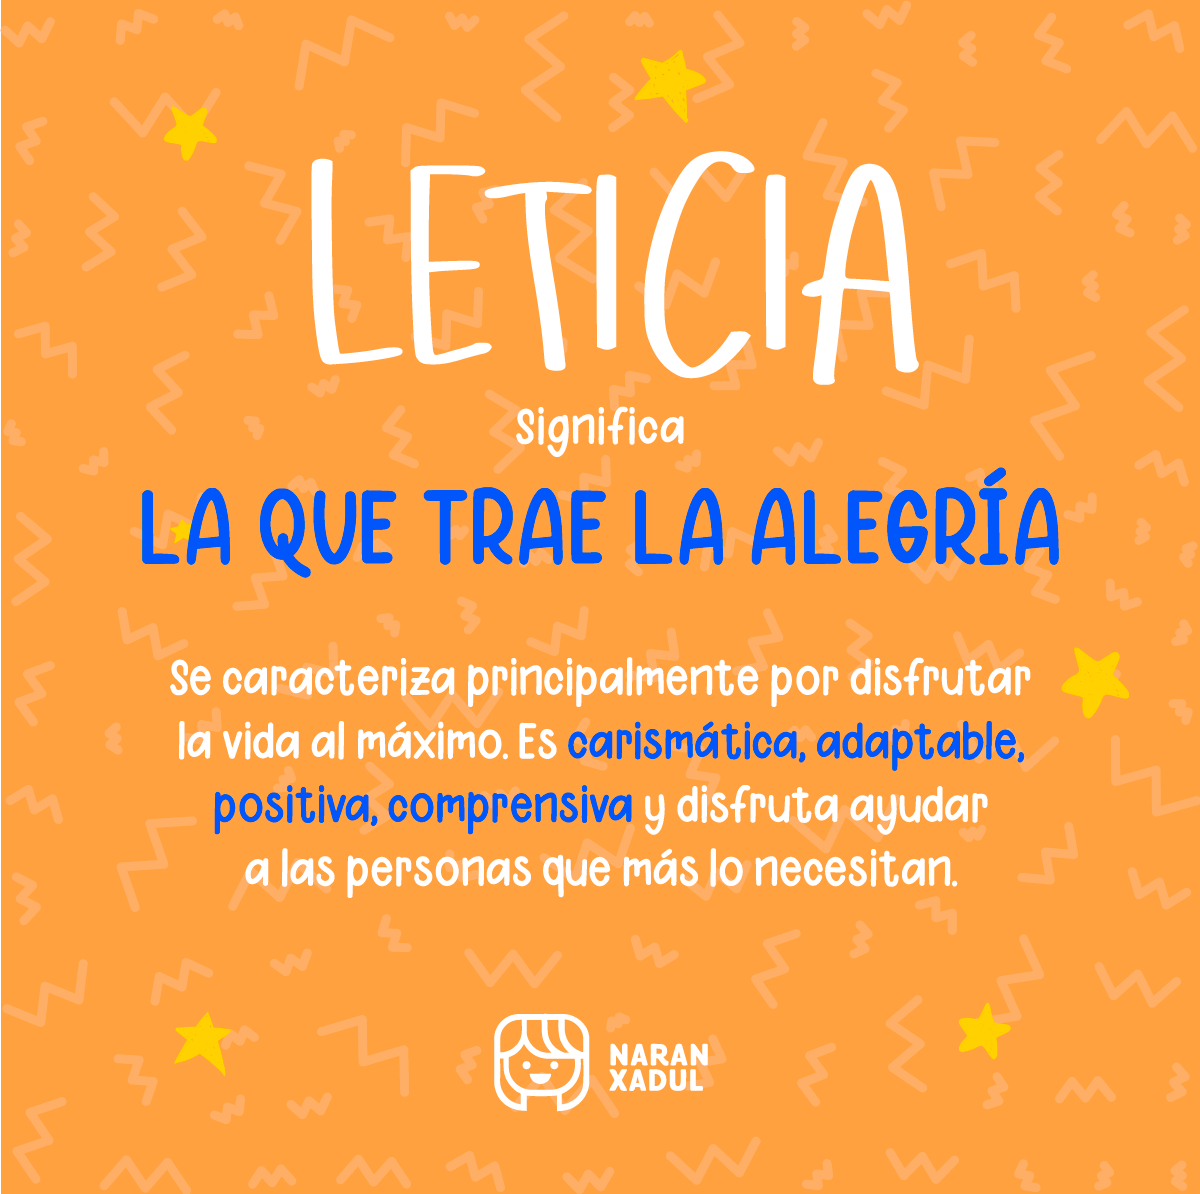 Significado de Leticia